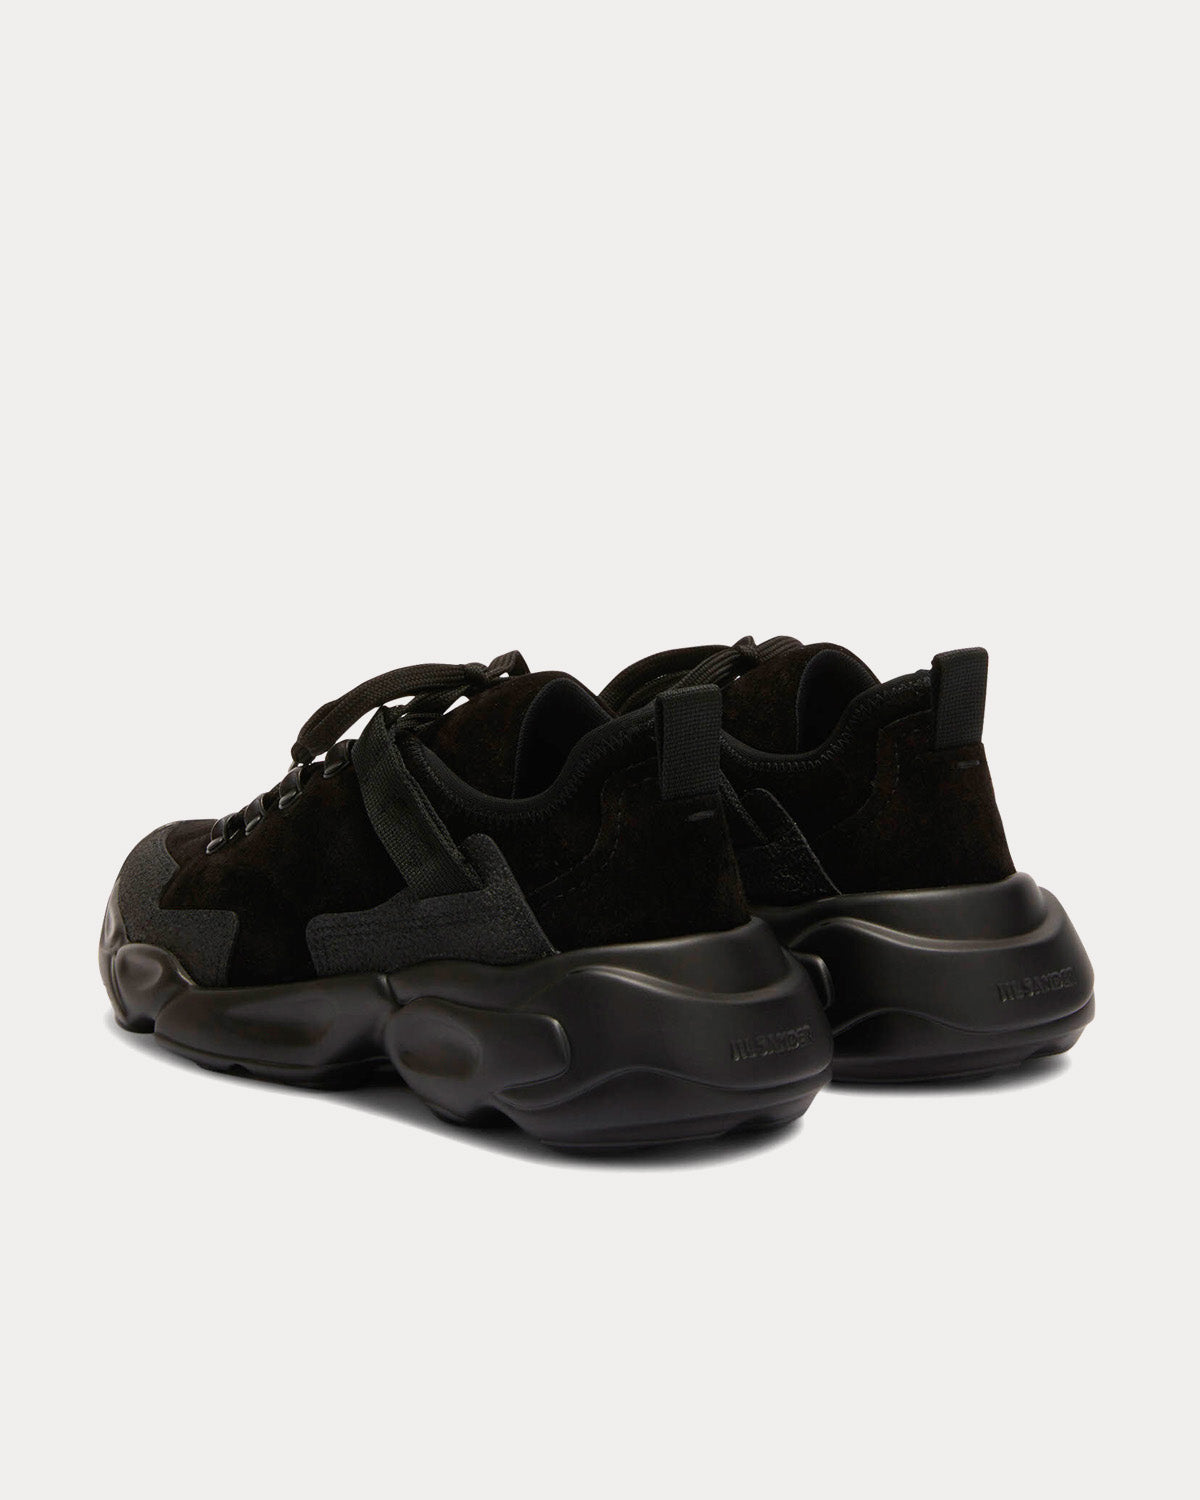 Jil Sander - Suede Leather Black Low Top Sneakers